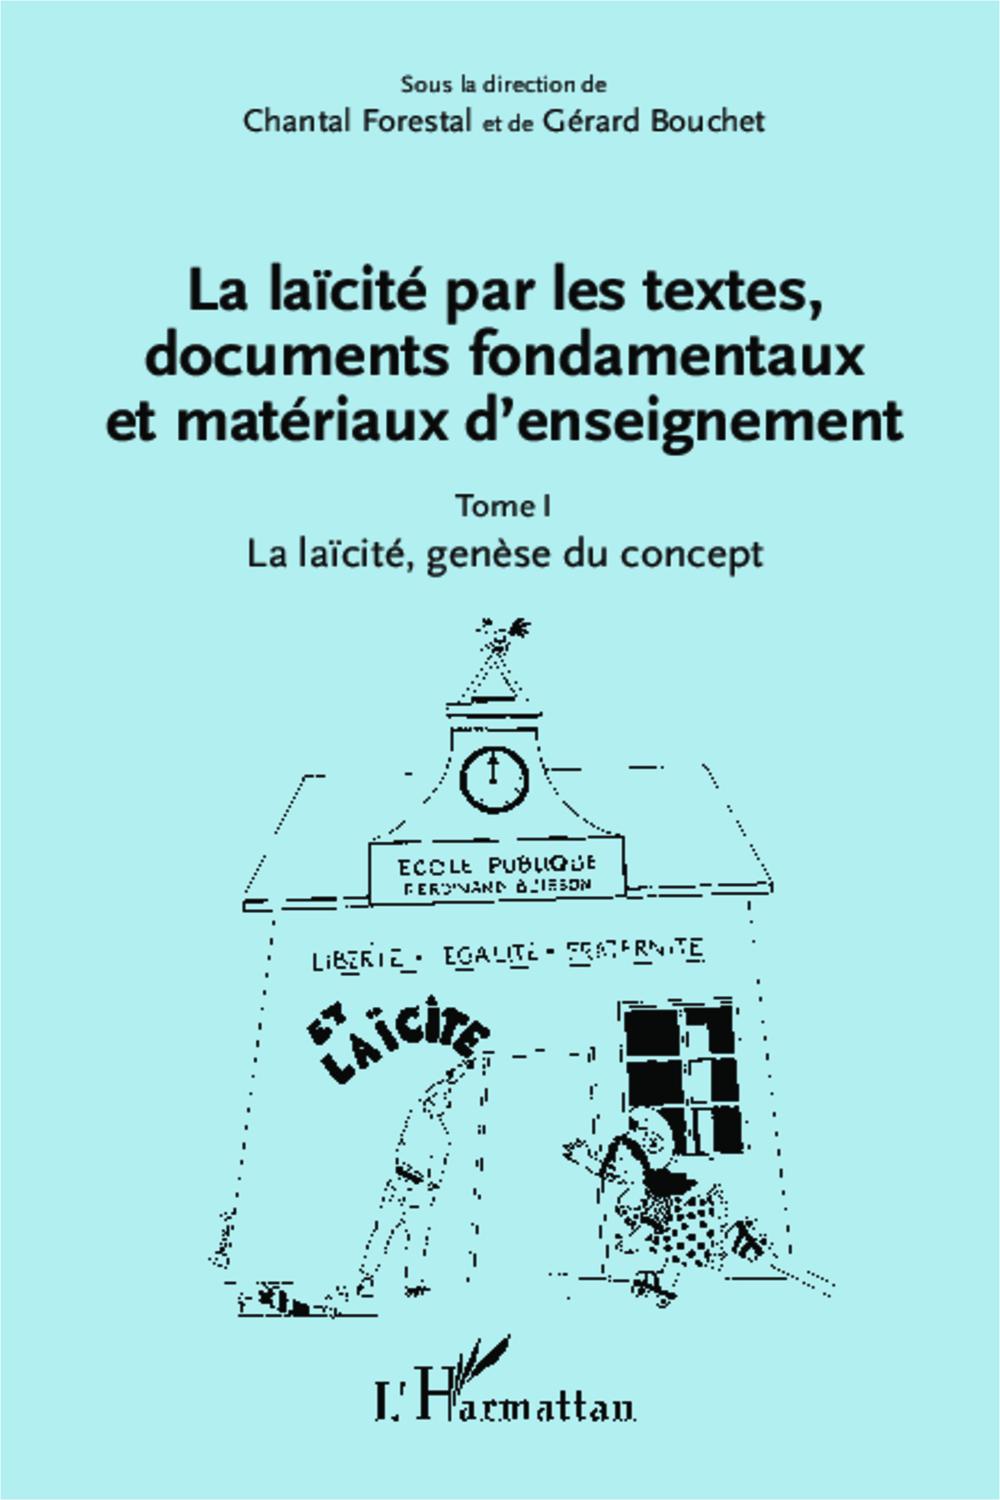 La laïcité par les textes, documents fondamentaux et matériaux d'enseignement (Tome 1) - Gérard Bouchet, Chantal Forestal